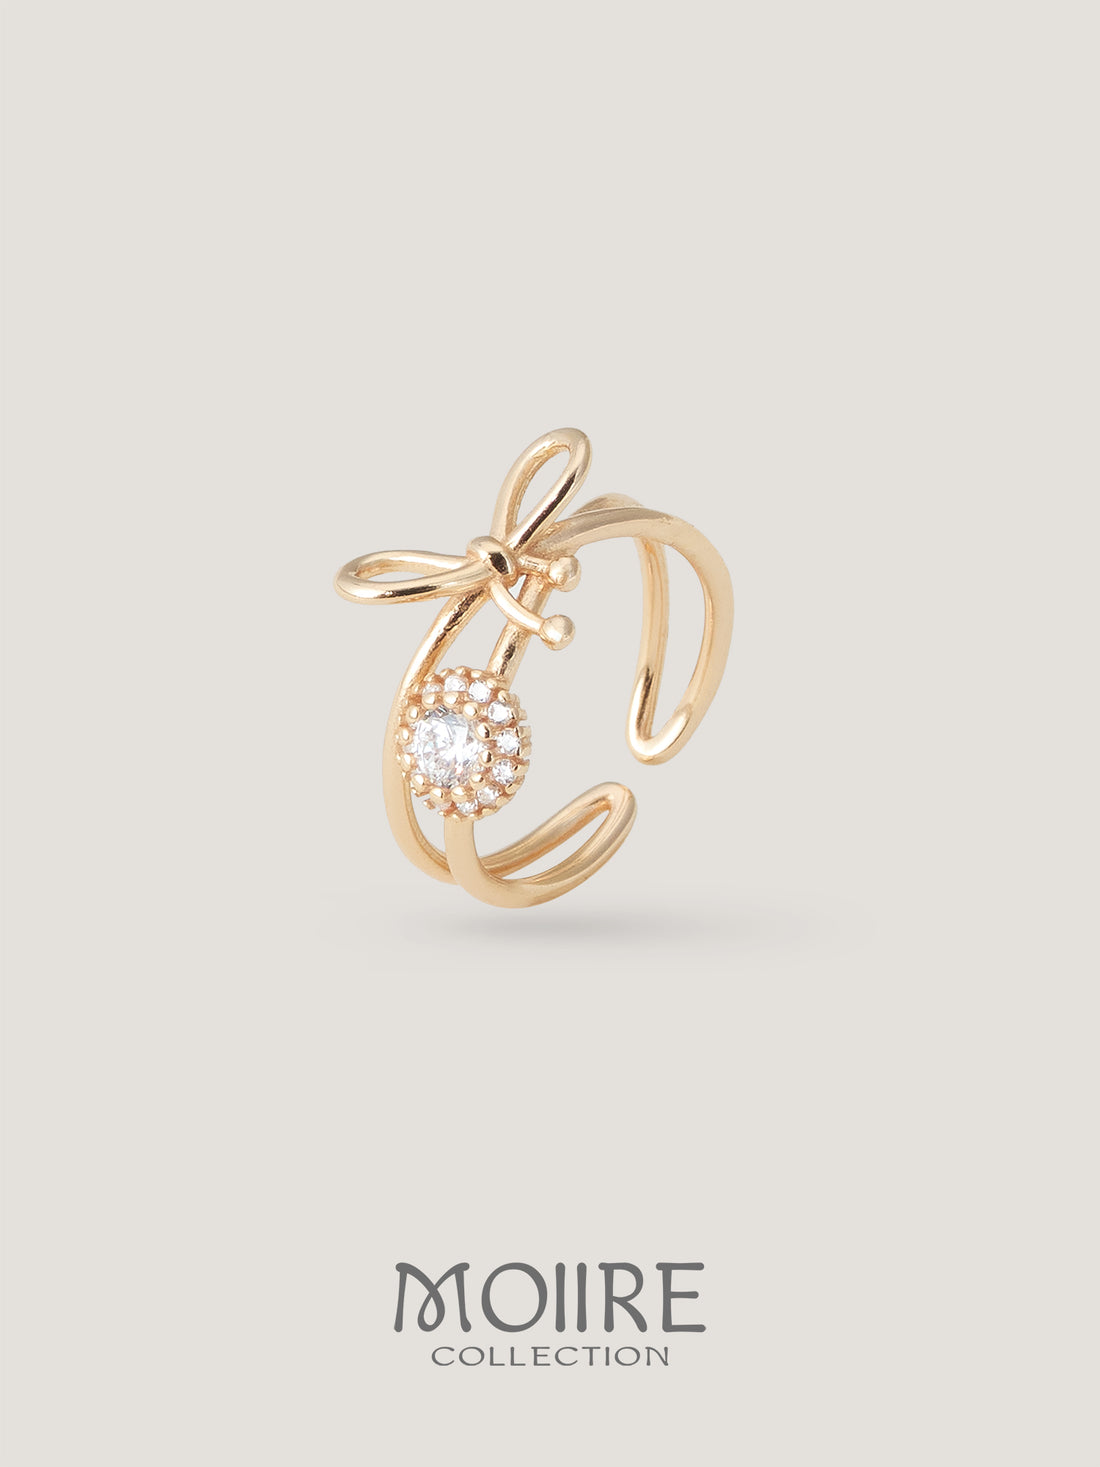 Moiire Jewelry | 獨放的結局